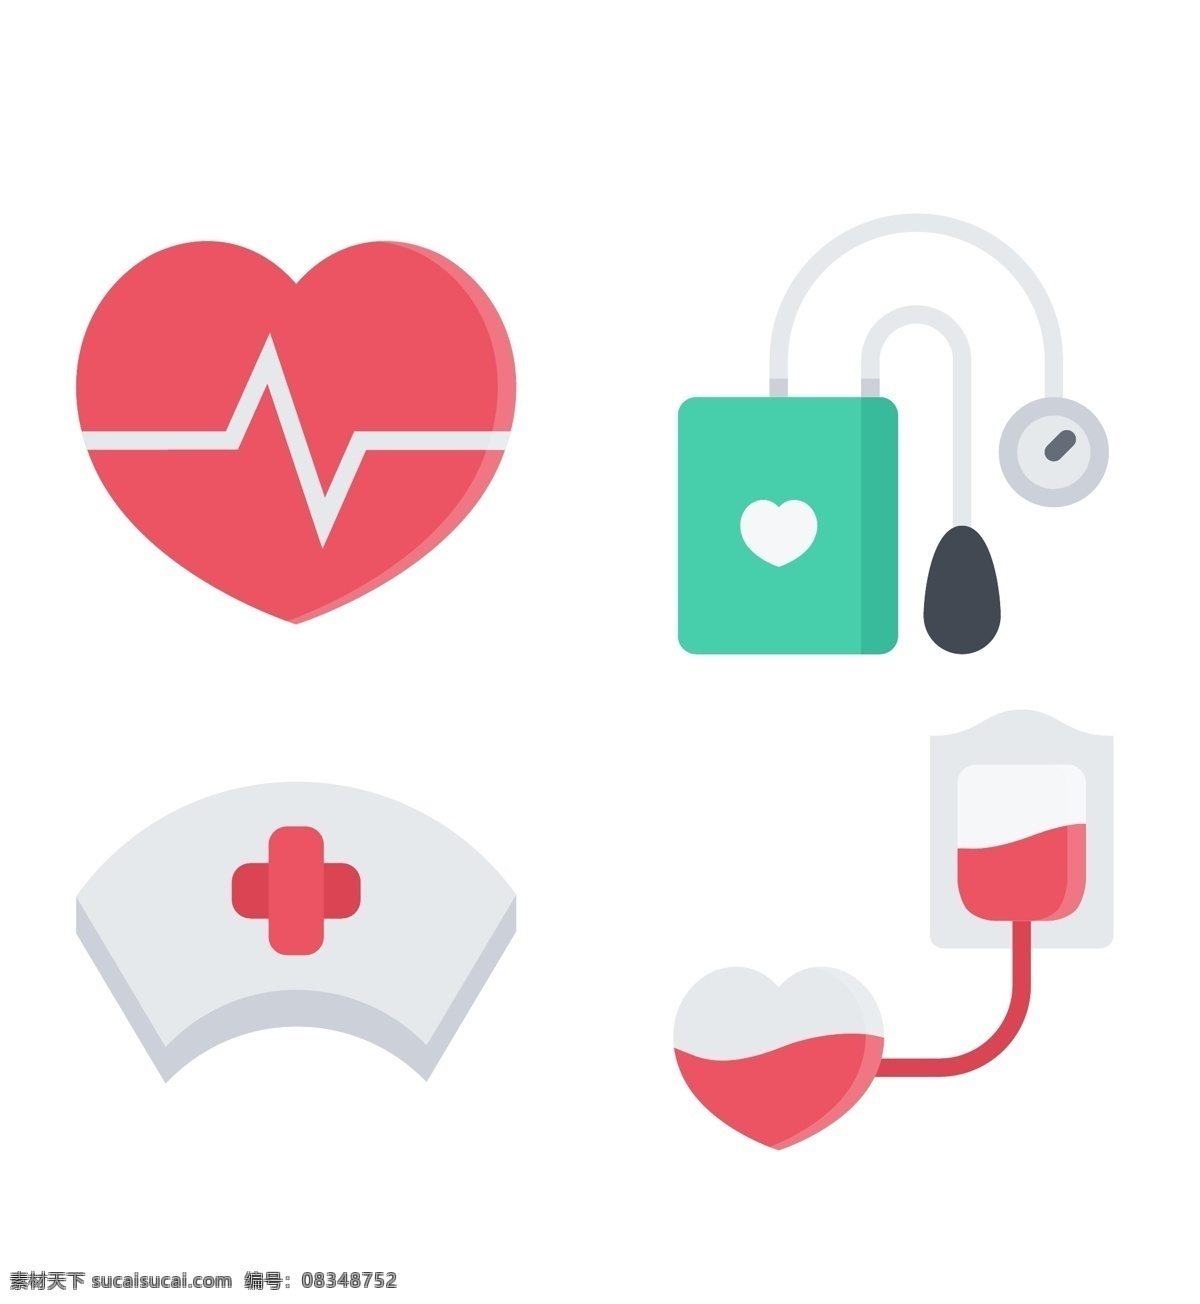 医疗 工具 icon 图标 表情图标 心脏 帽子 输血 图标下载 网页图标 创意图标 图标设计